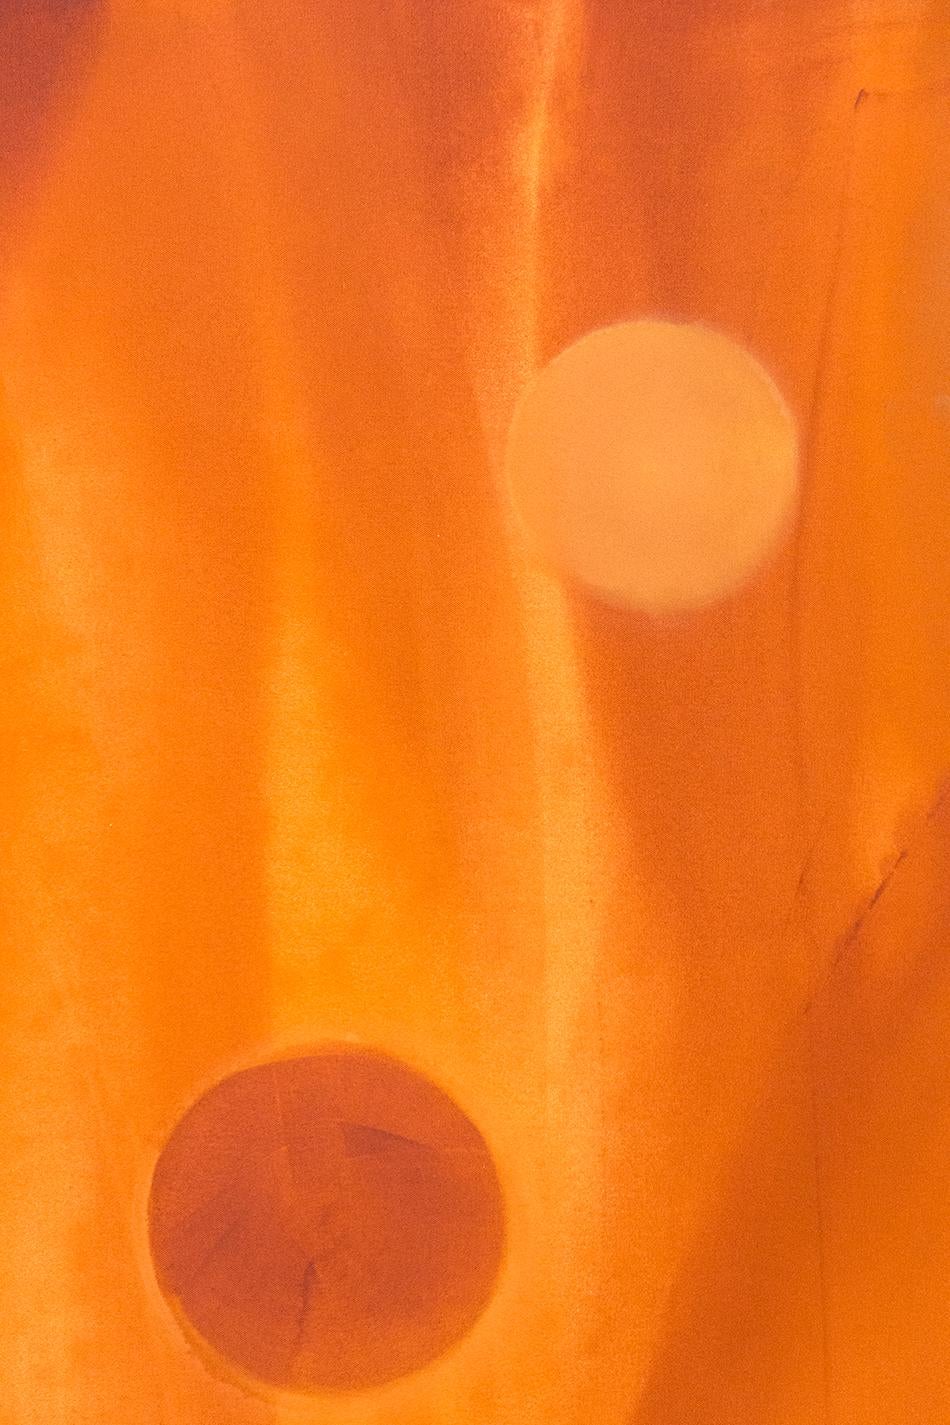 Kugeln in verbranntem Orange, Türkis und Saphirblau tanzen auf dieser meisterhaften Leinwand von Milly Ristvedt in einem lyrischen und jazzigen Tanz über einen orangefarbenen Grund. Das Gemälde demonstriert die kraftvolle Ästhetik des Künstlers und